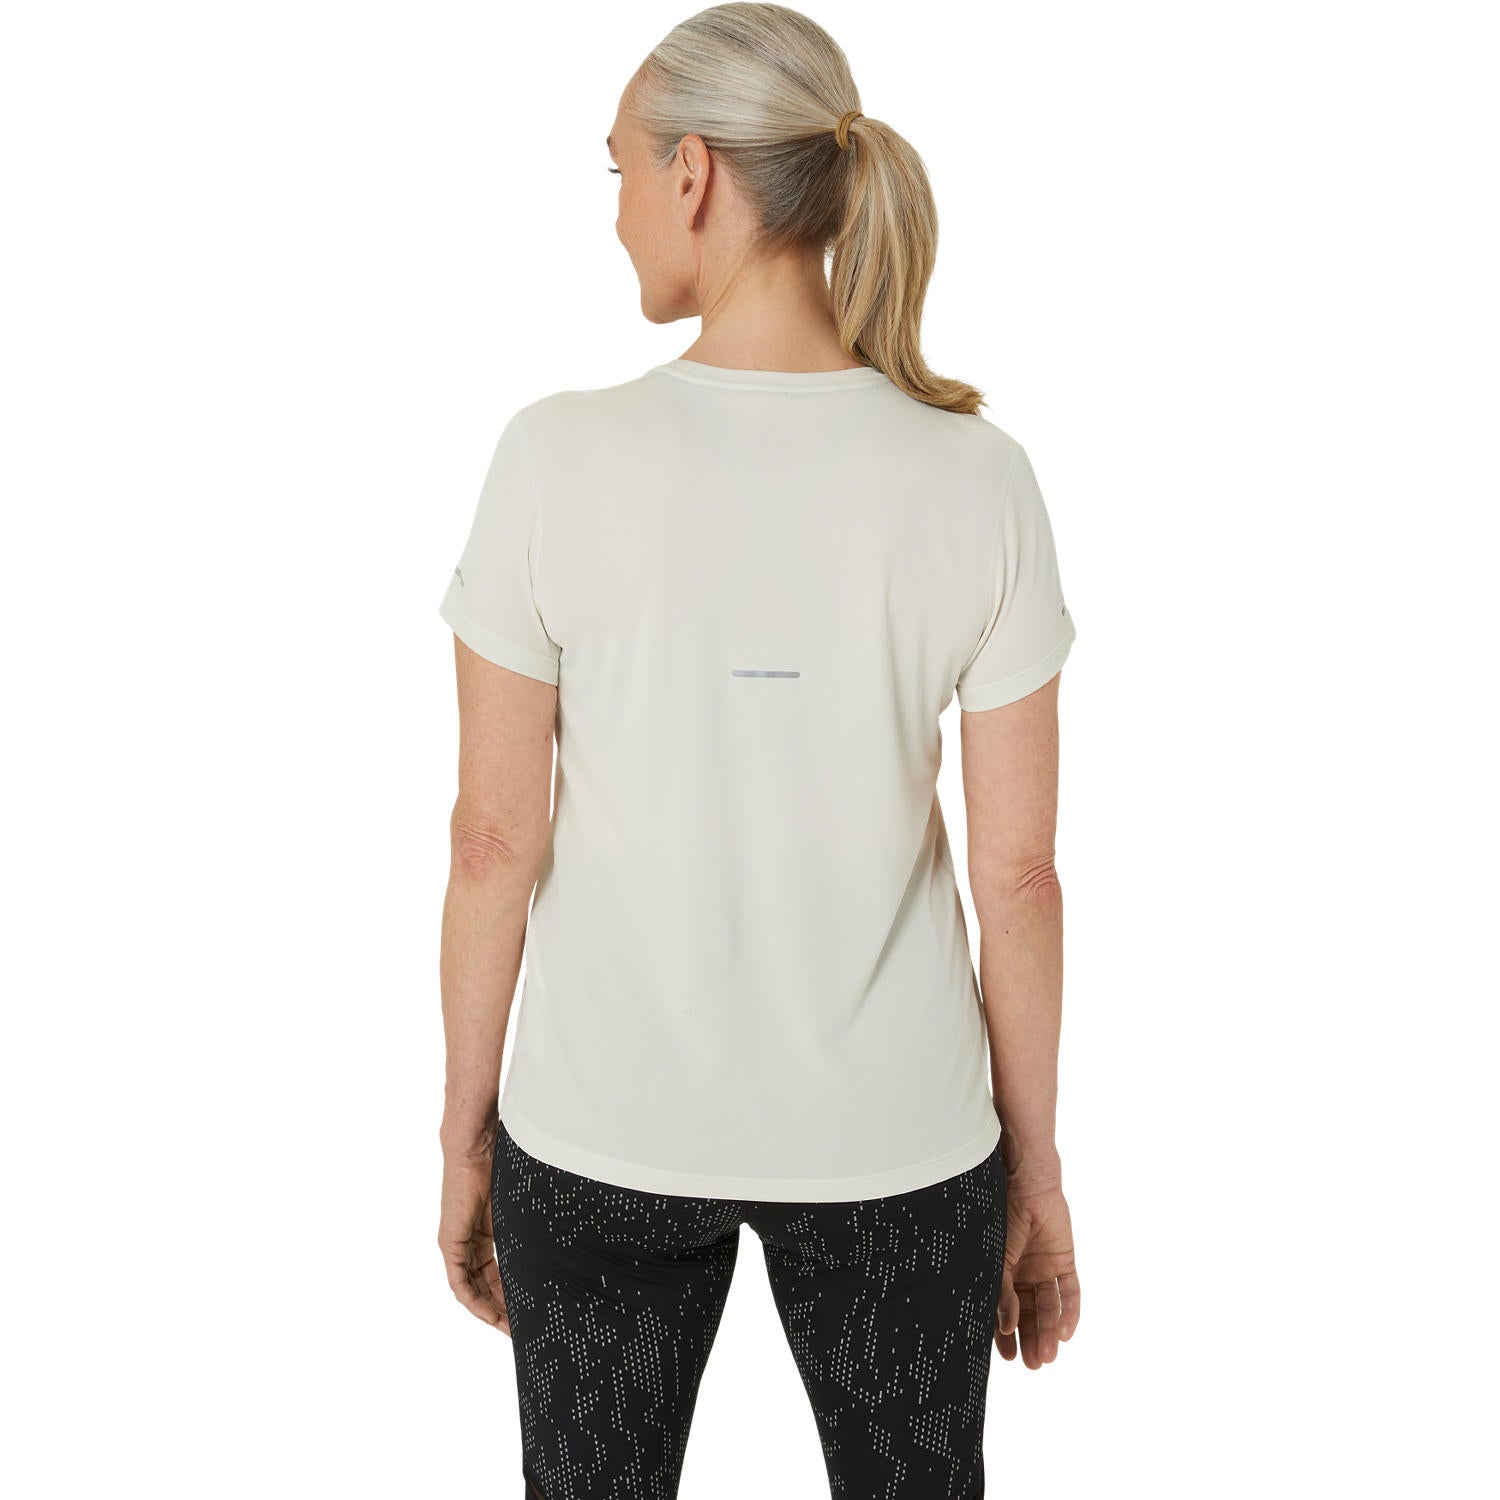 Womens Running Lite-Show Short Sleeve T-Shirt